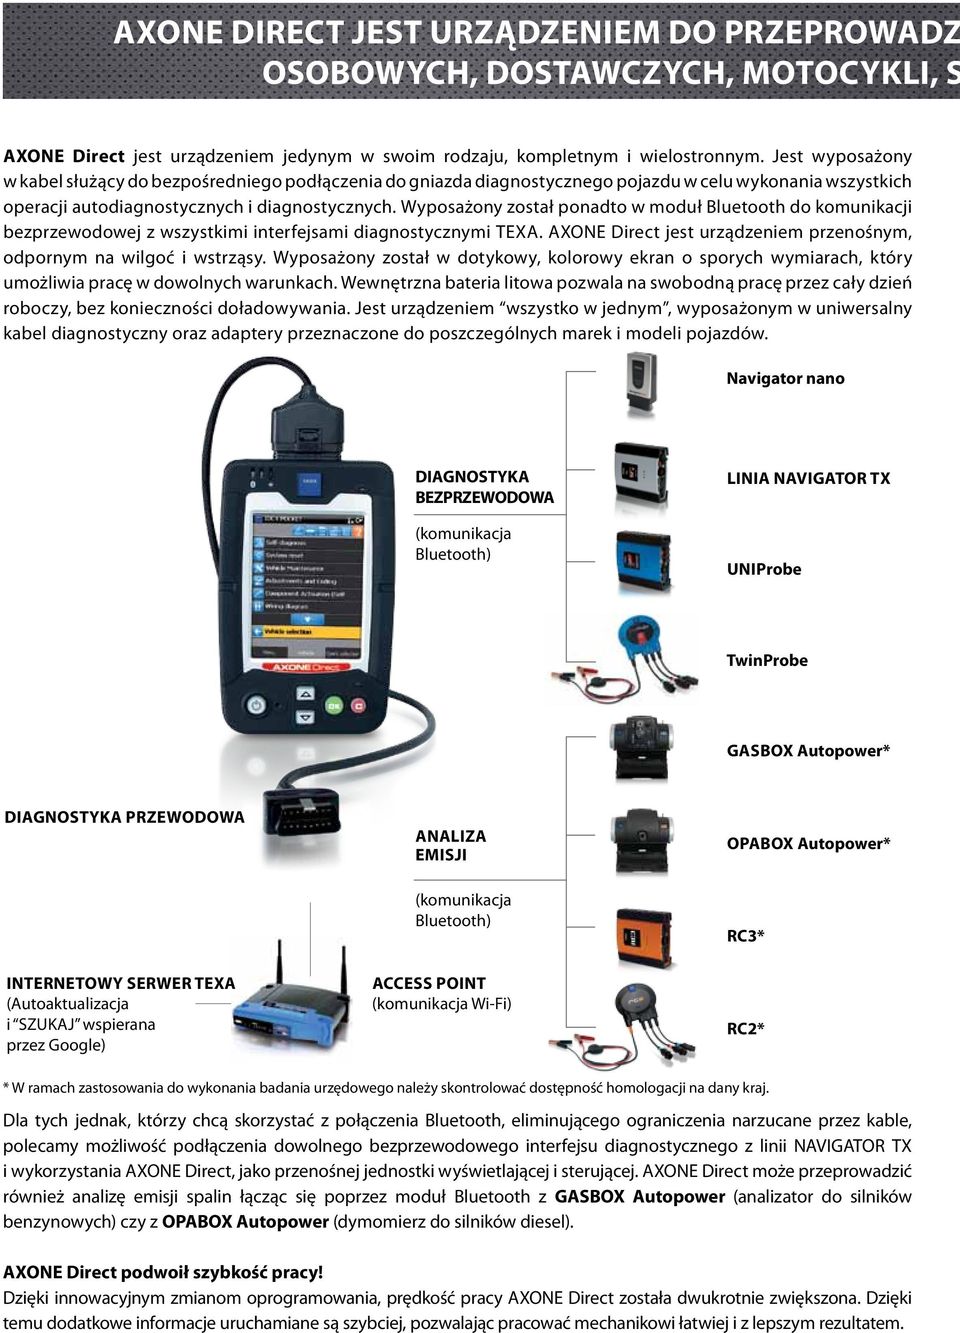 Wyposażony został ponadto w moduł Bluetooth do komunikacji bezprzewodowej z wszystkimi interfejsami diagnostycznymi TEXA. AXONE Direct jest urządzeniem przenośnym, odpornym na wilgoć i wstrząsy.